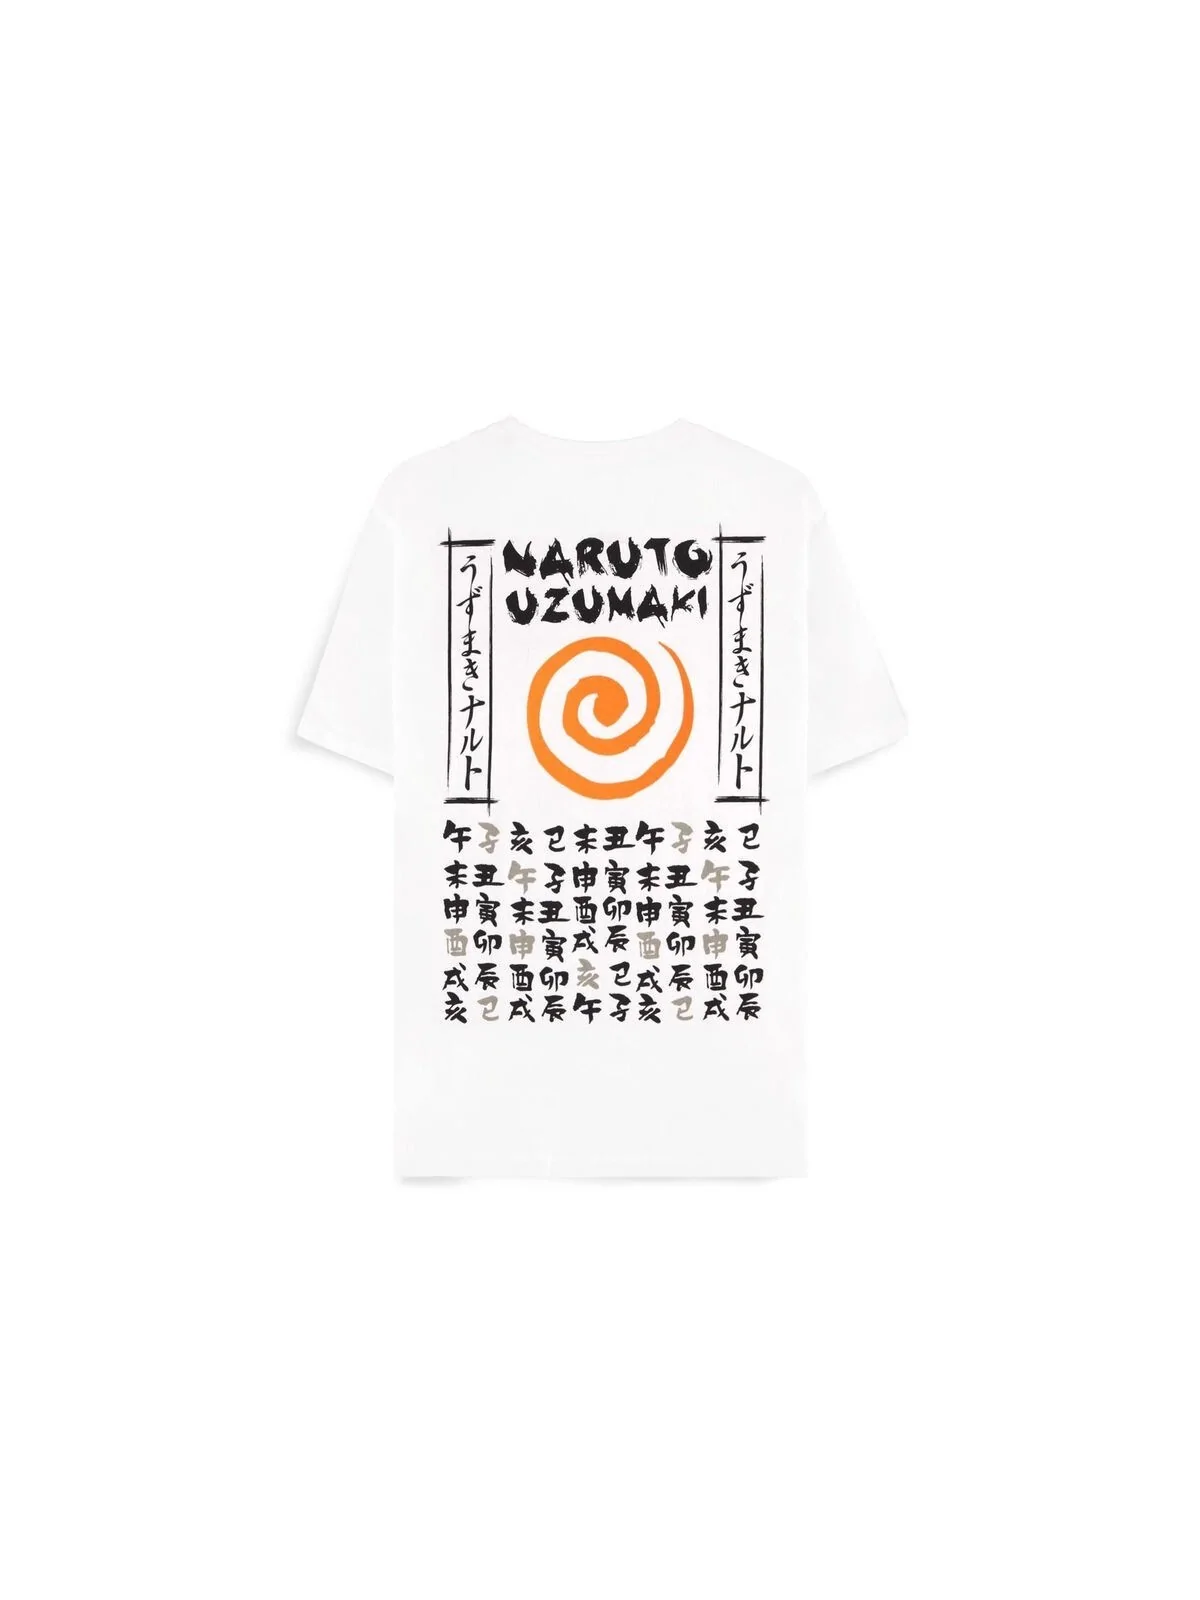 Comprar Camiseta Bosozuko Style Naruto Shippuden barato al mejor preci